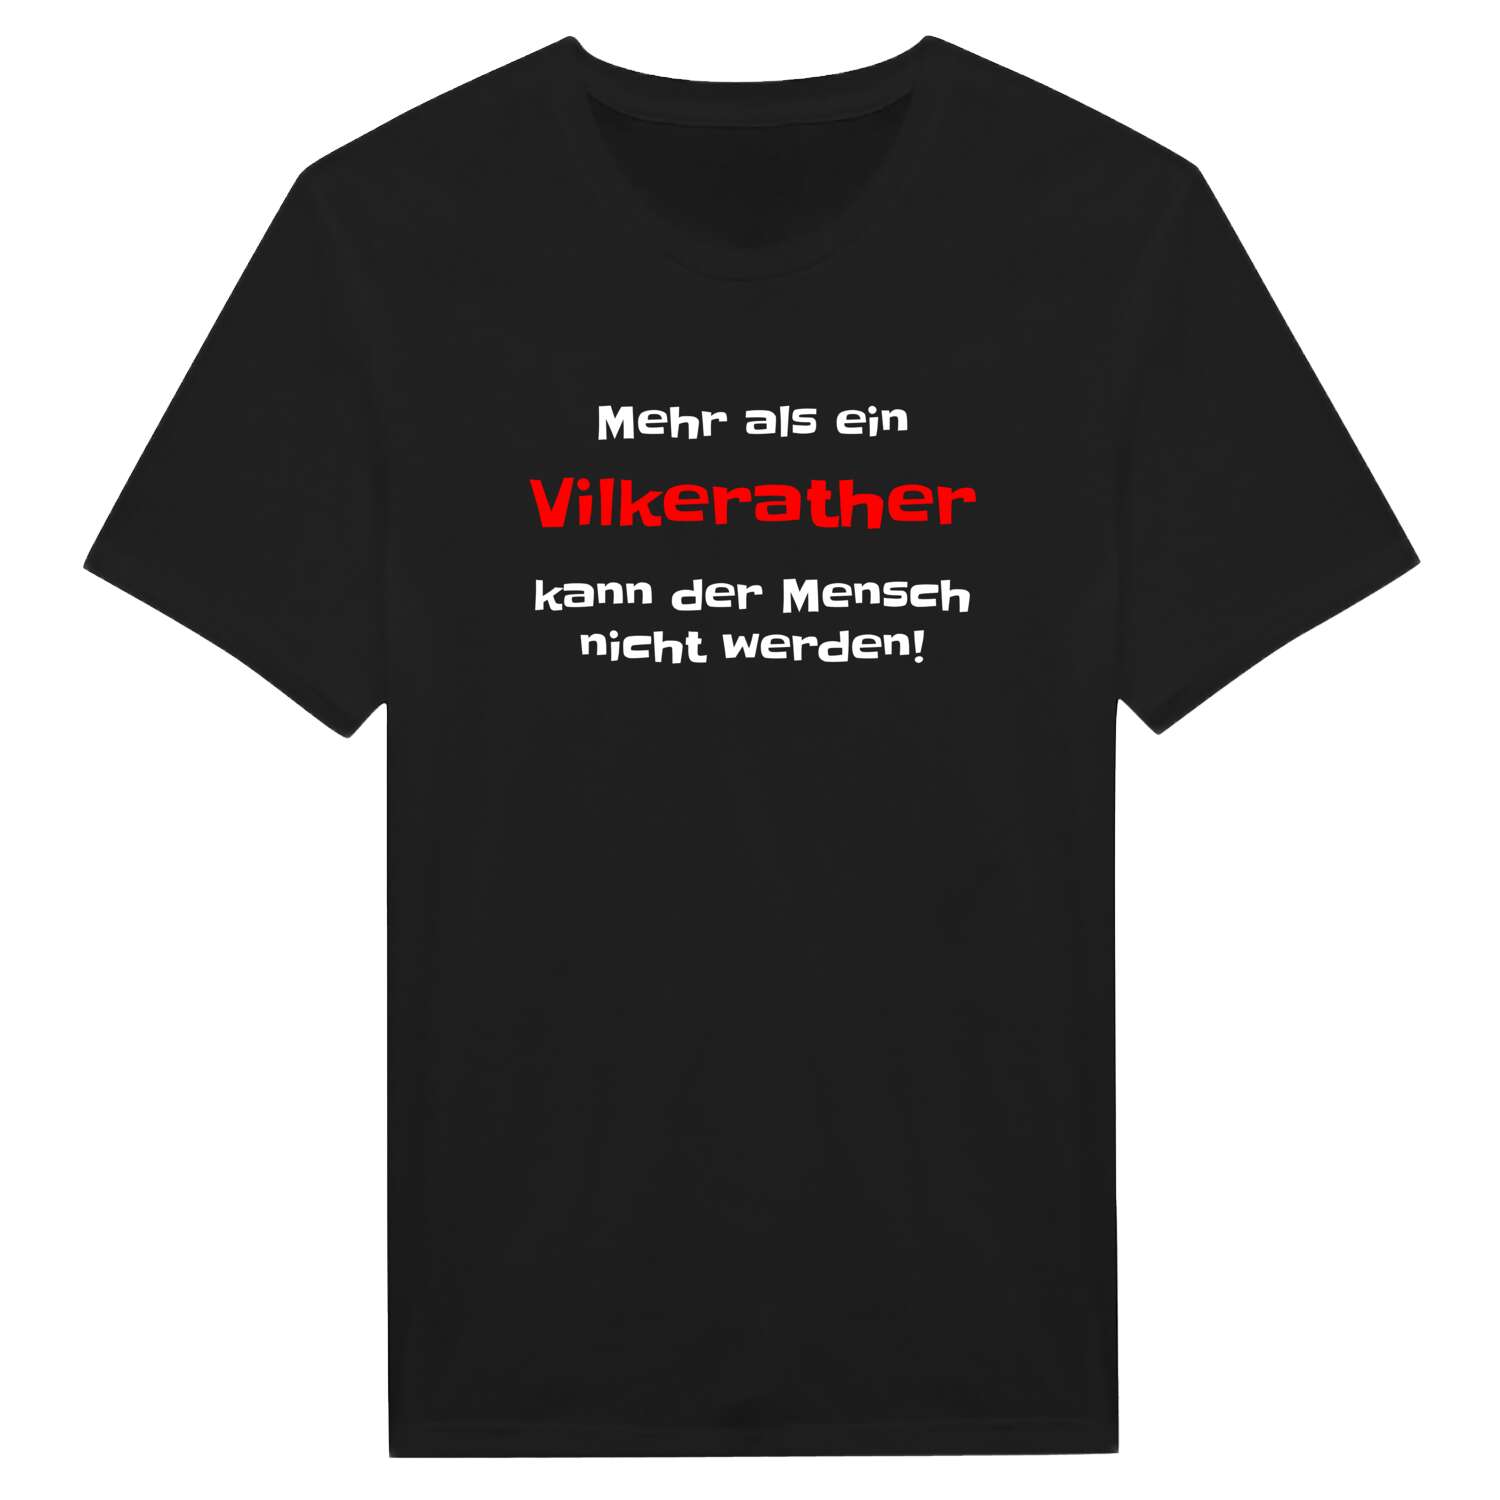 Vilkerath T-Shirt »Mehr als ein«